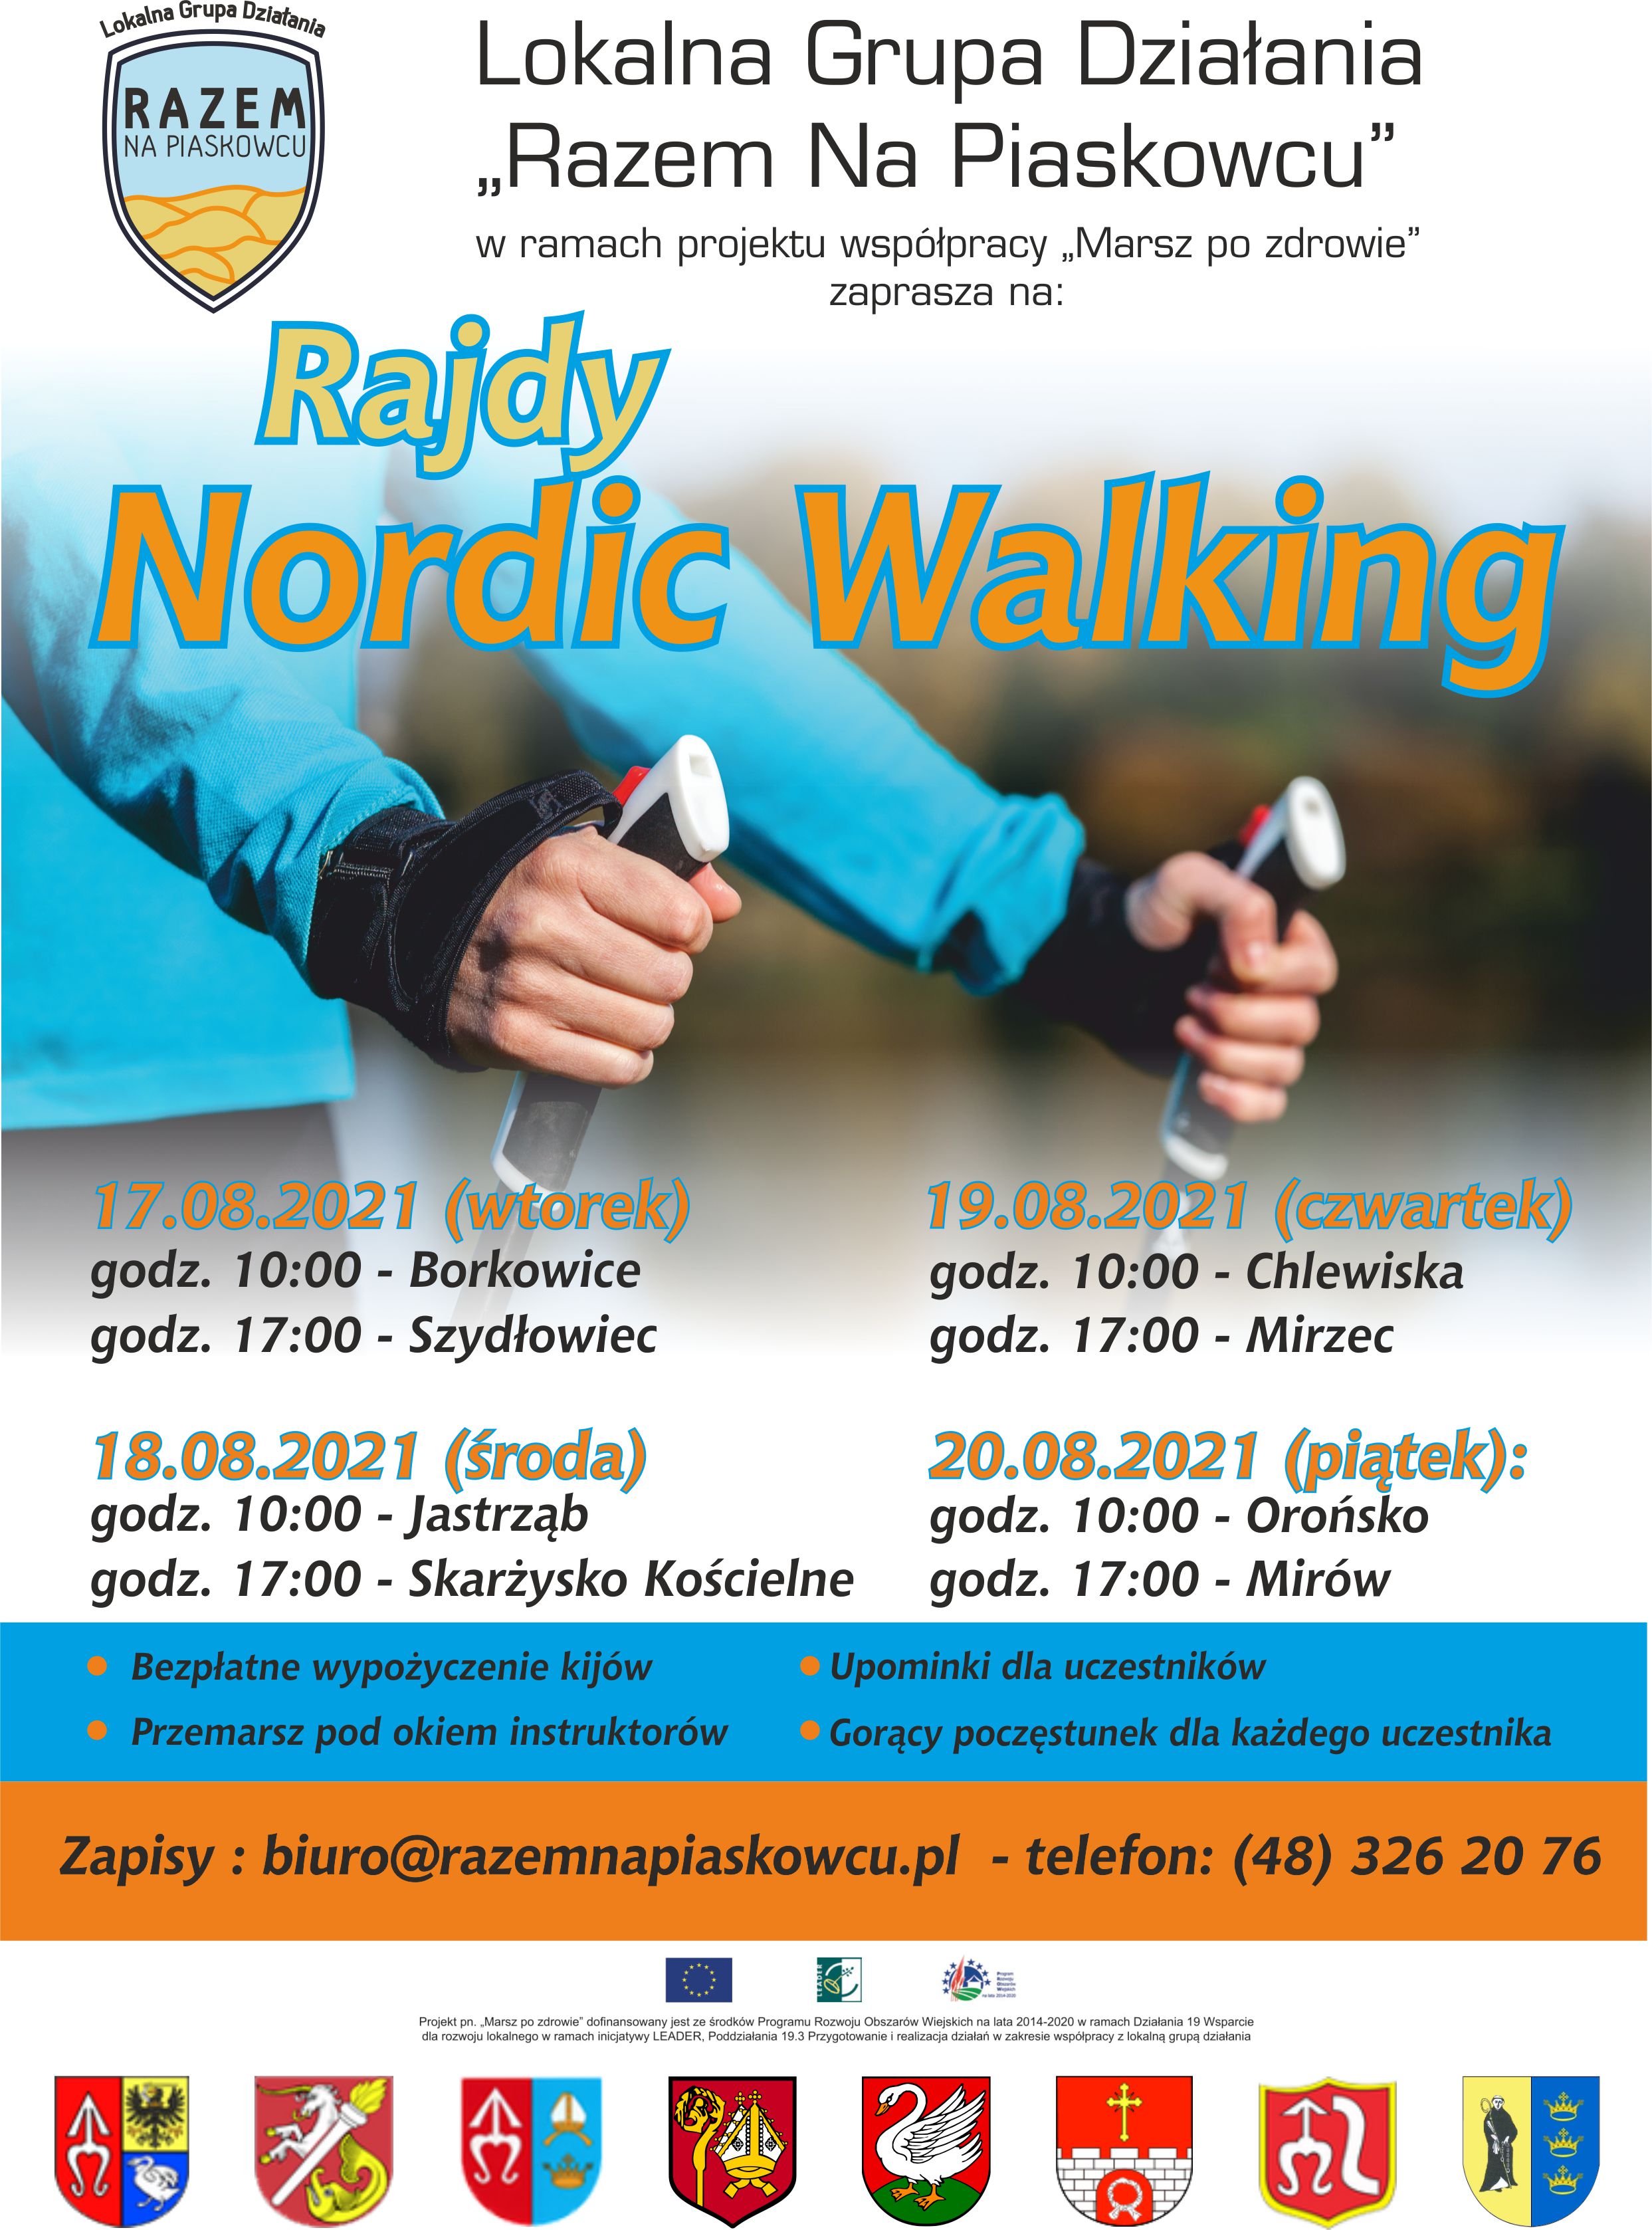 Lokalna Grupa Działania "Razem na Piaskowcu" w ramach projektu "Marsz to zdrowie" zaprasza ma Rajd Nordic Walking